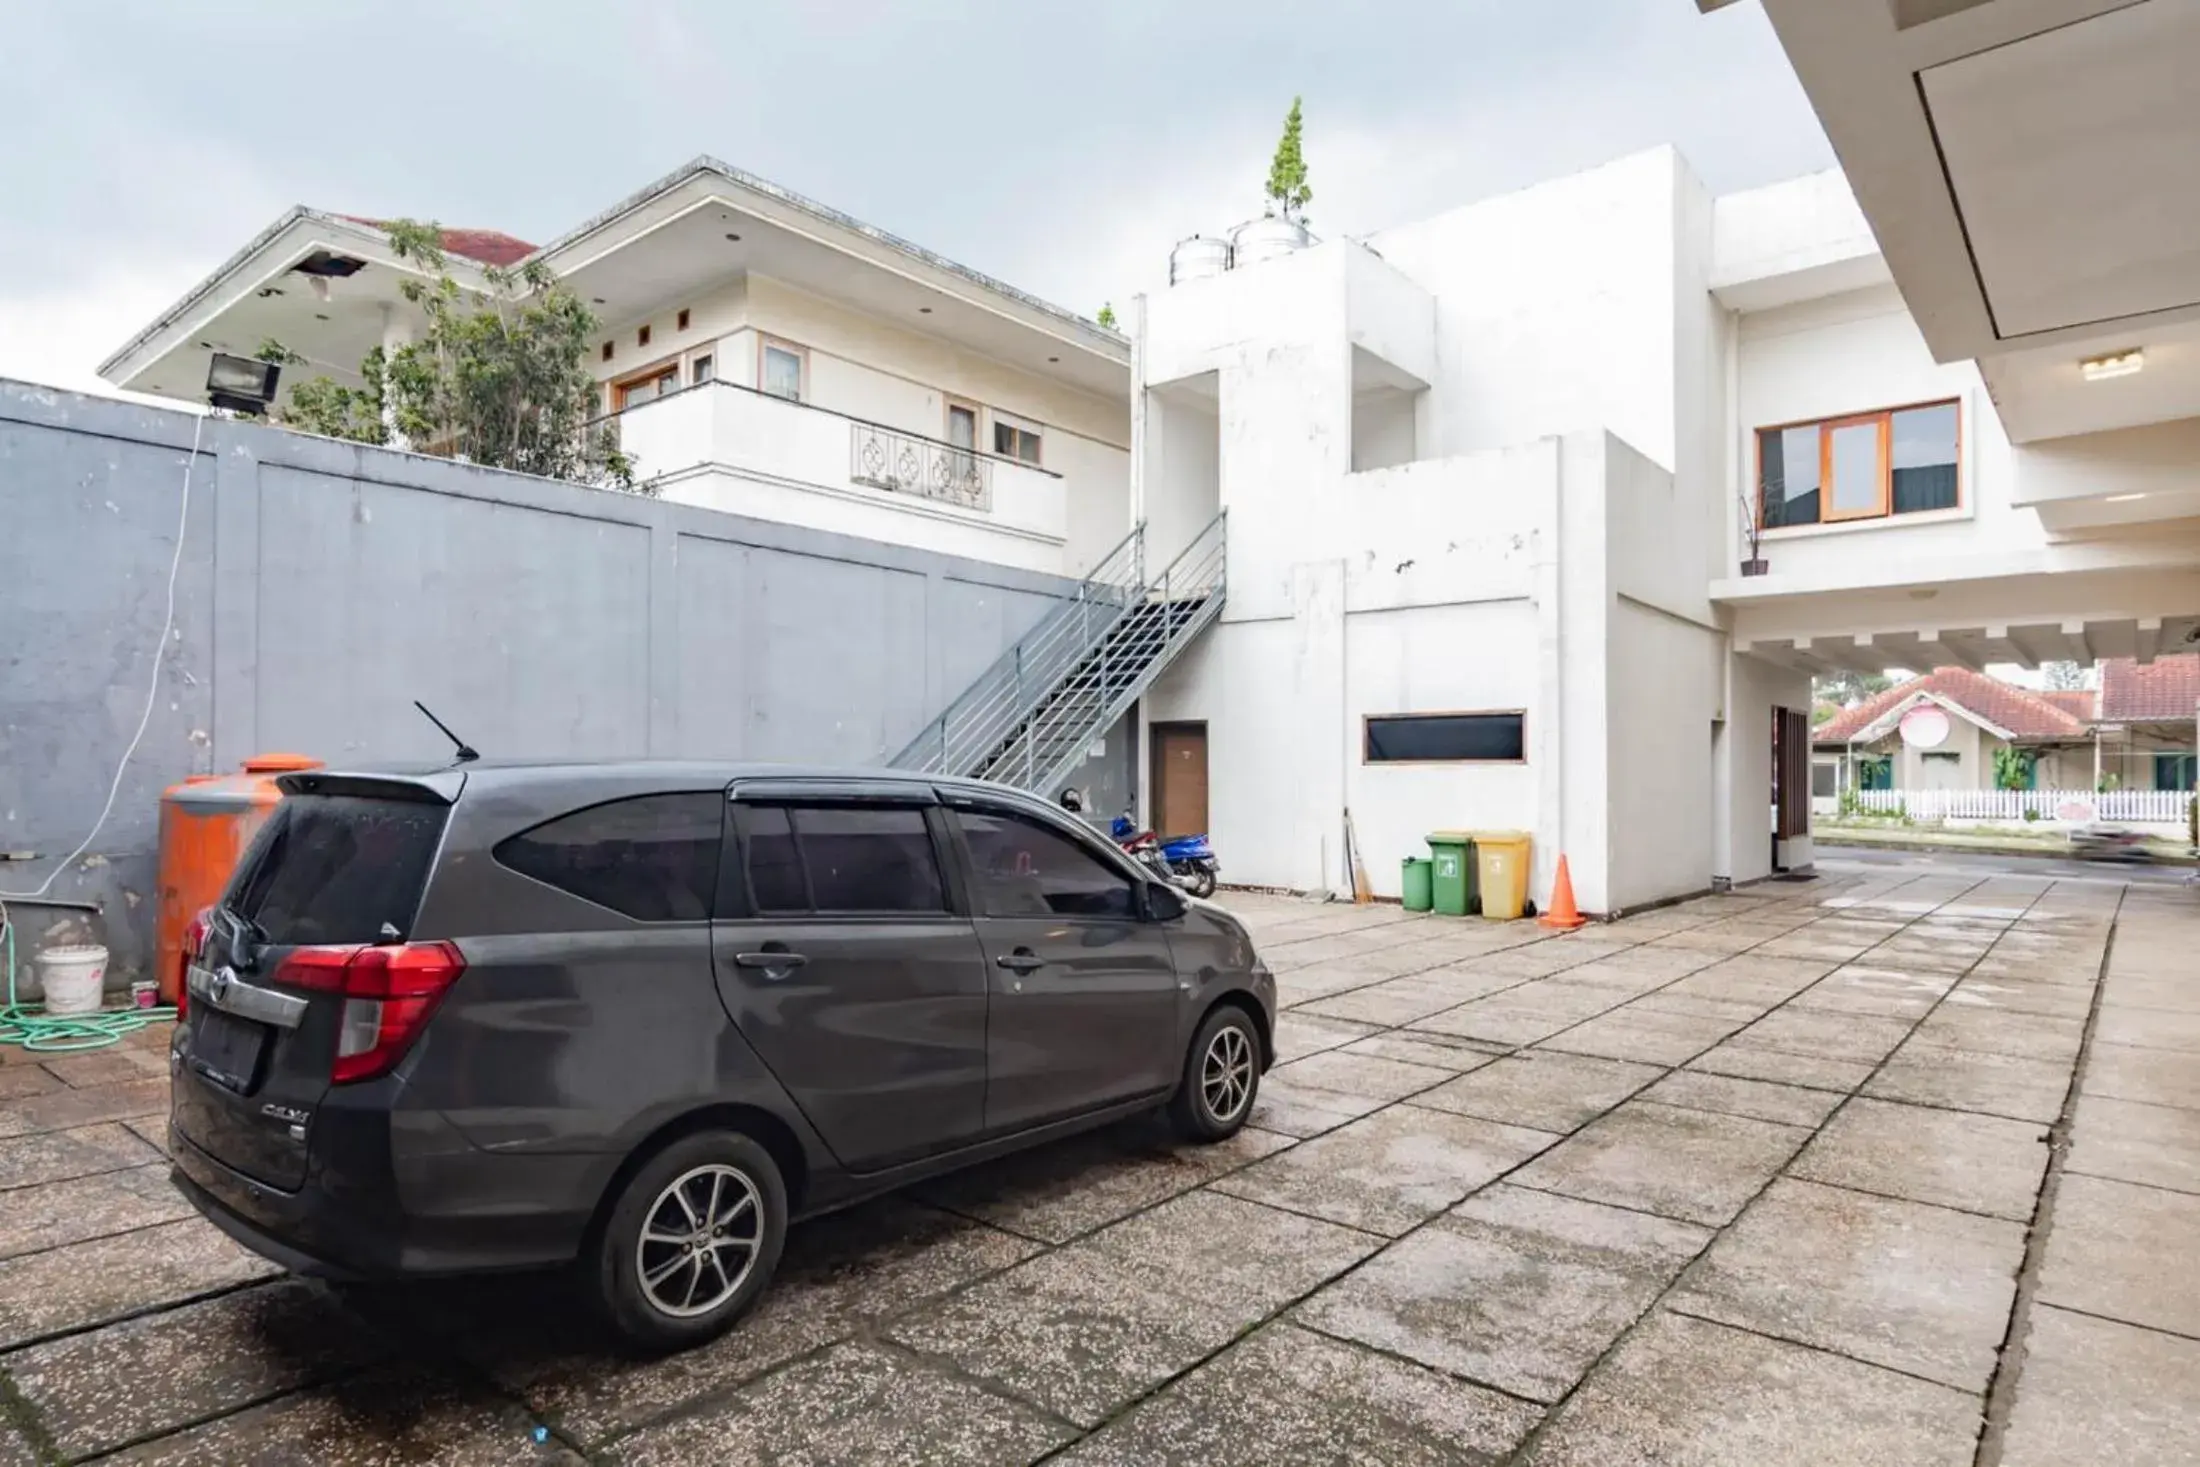 Parking, Property Building in RedDoorz near Lembang Park & Zoo 2